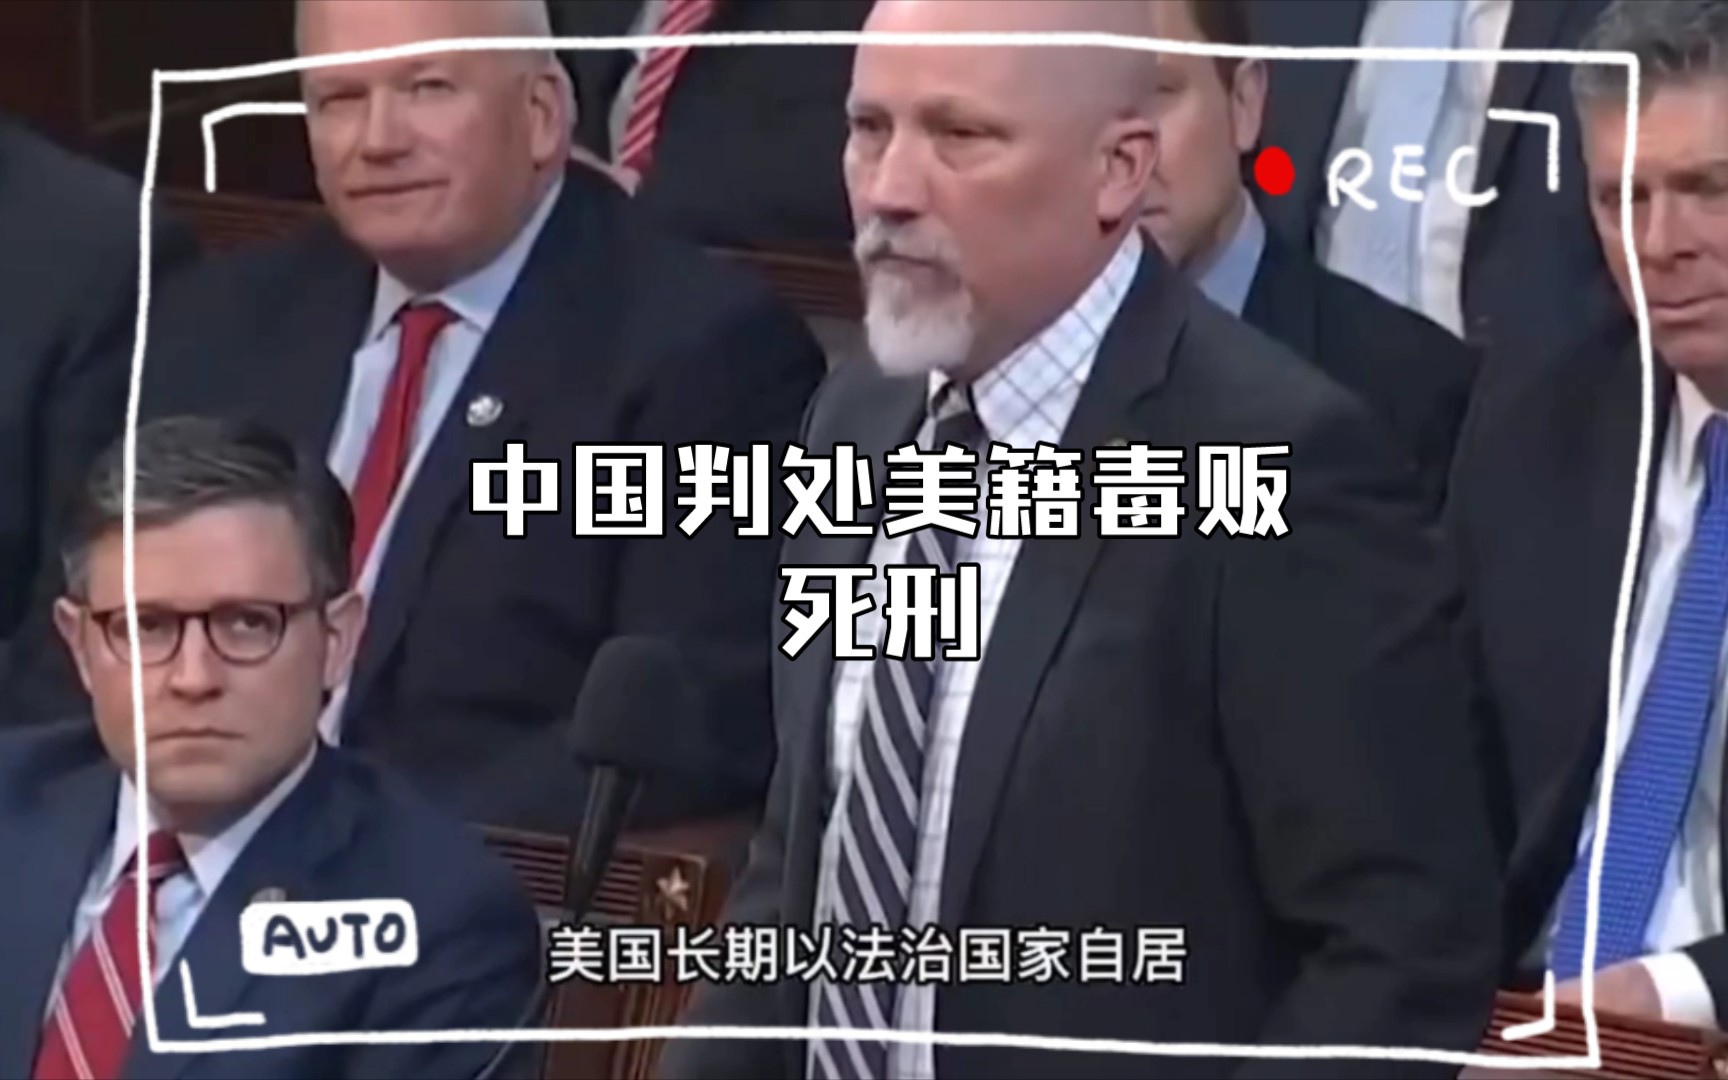 中国判处美籍毒贩死刑，美众议院急了，全票通过决议要求放人